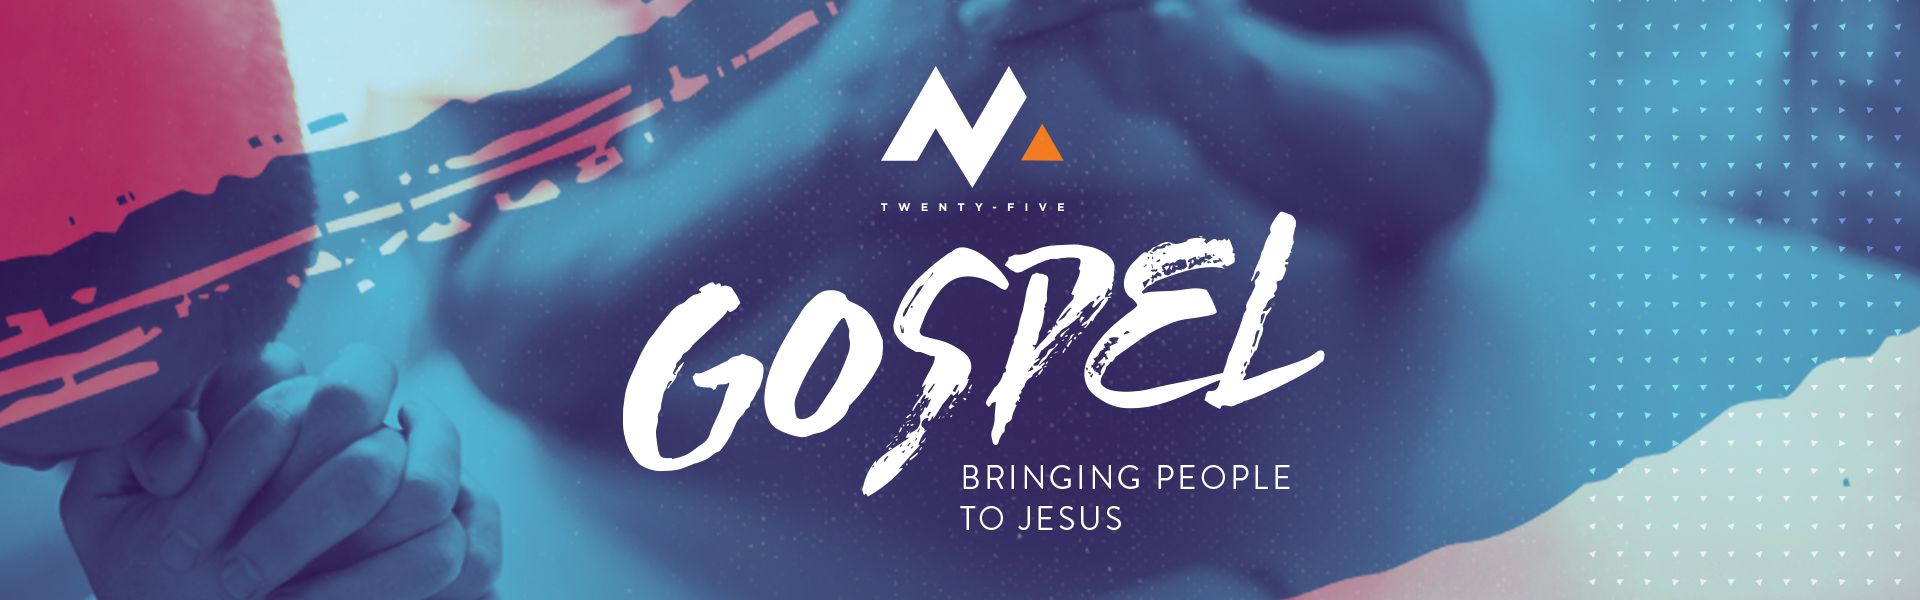 Gospel: Bringing People to Jesus